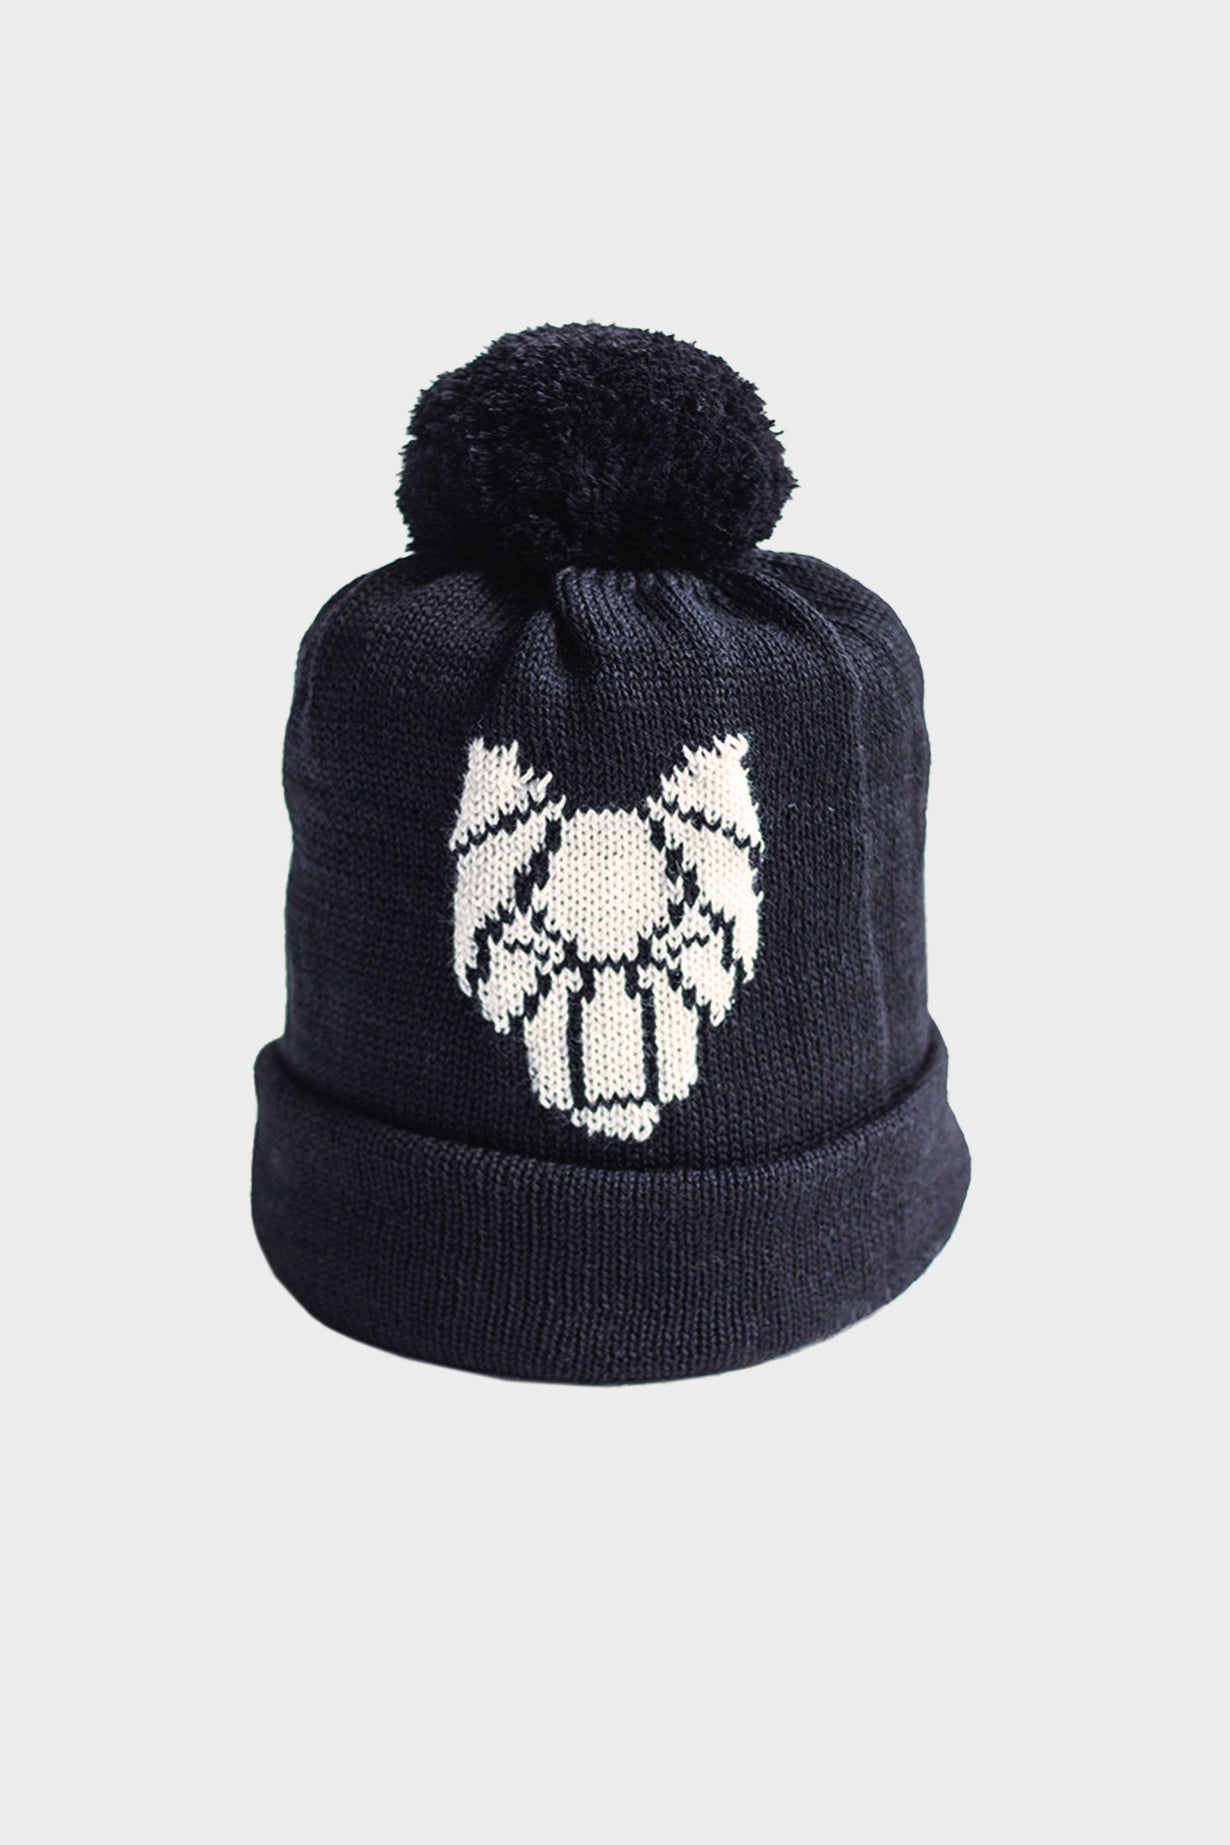 ONE WOLF hat with pom pom black/white logo